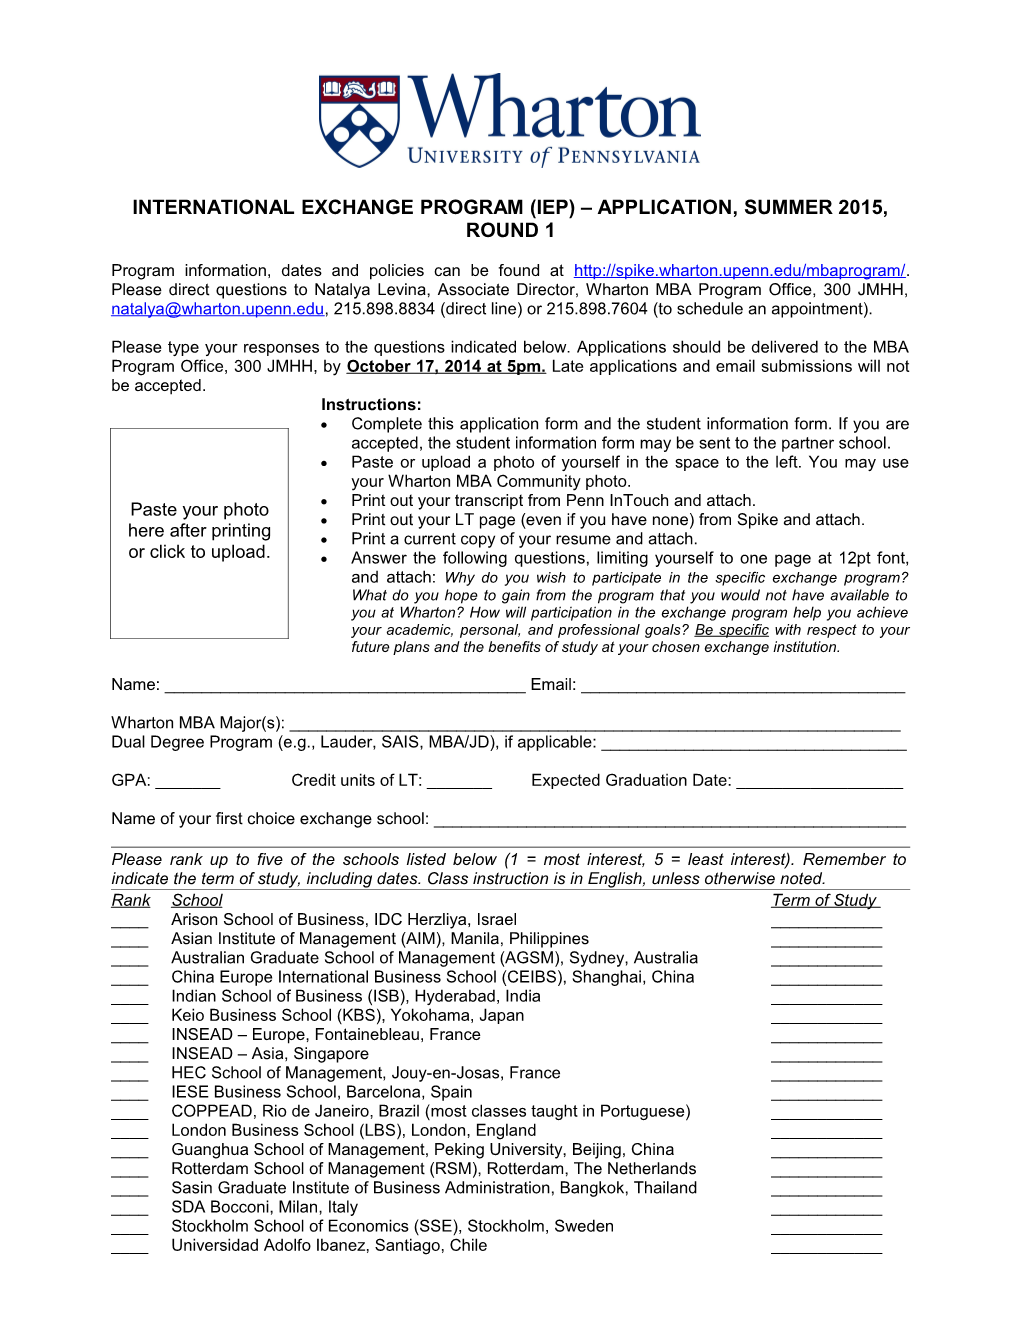 International Exchange Program (Iep) Application, Summer 2015, Round 1